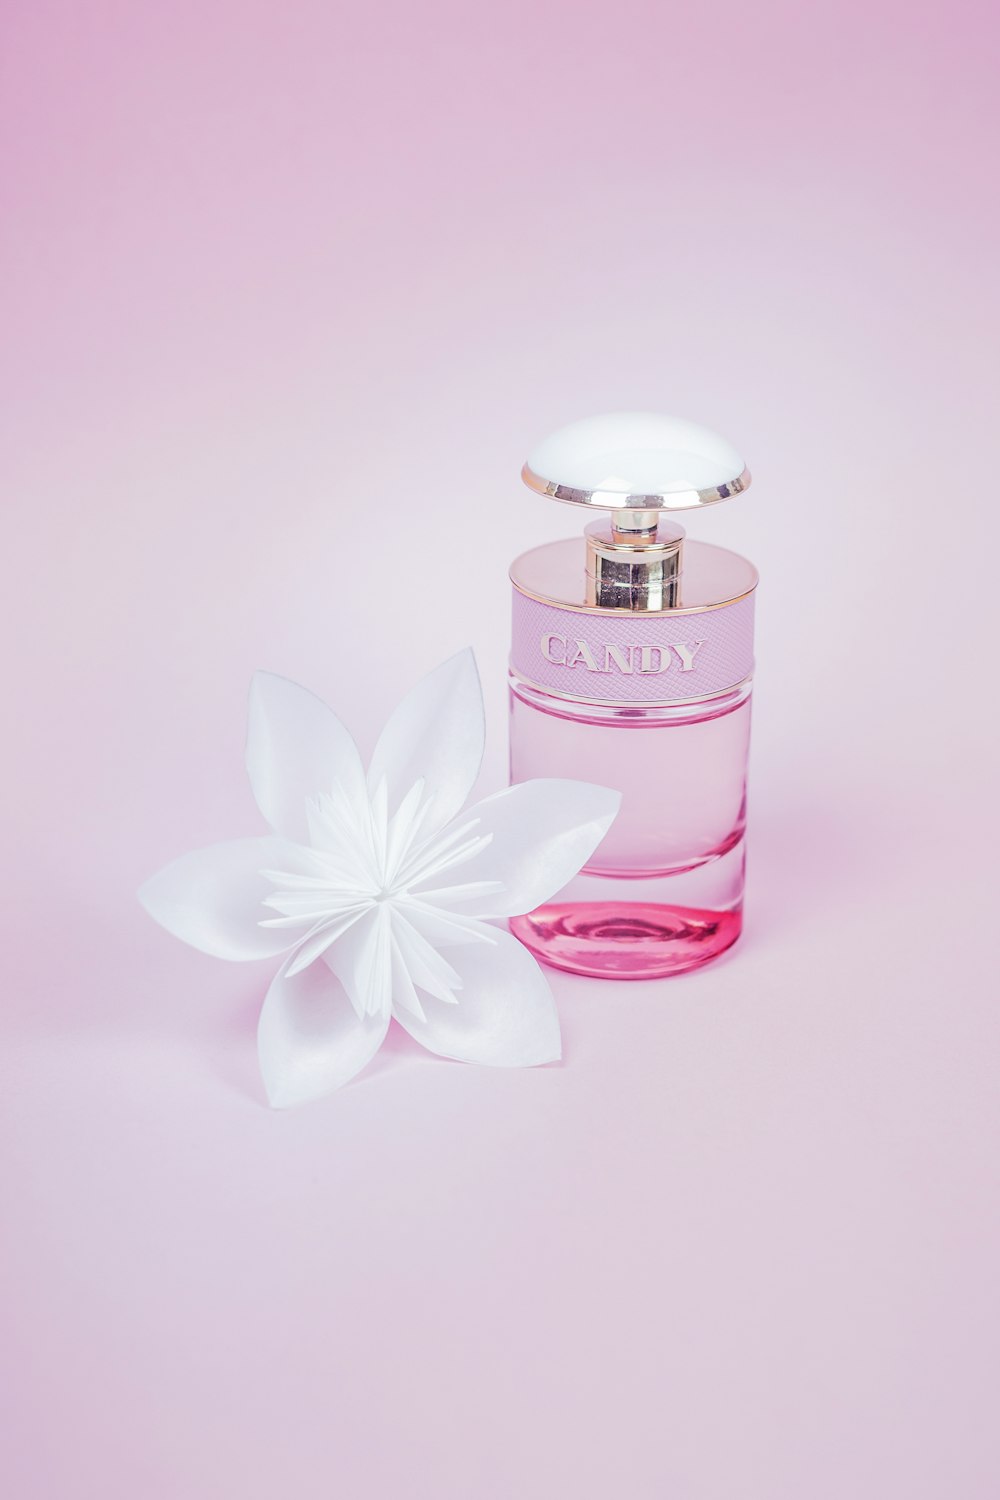 흰색 꽃과 핑크 향수 병